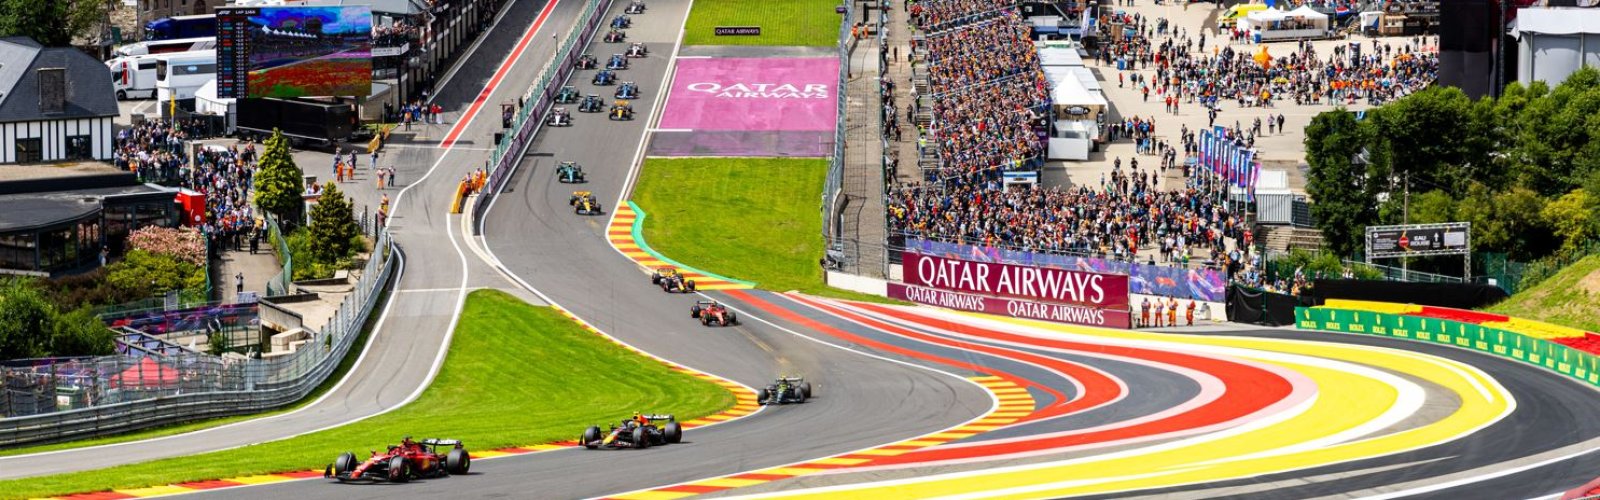 Formula 1 Grand Prix Belgium at Circuit de Spa-Francorchamps 